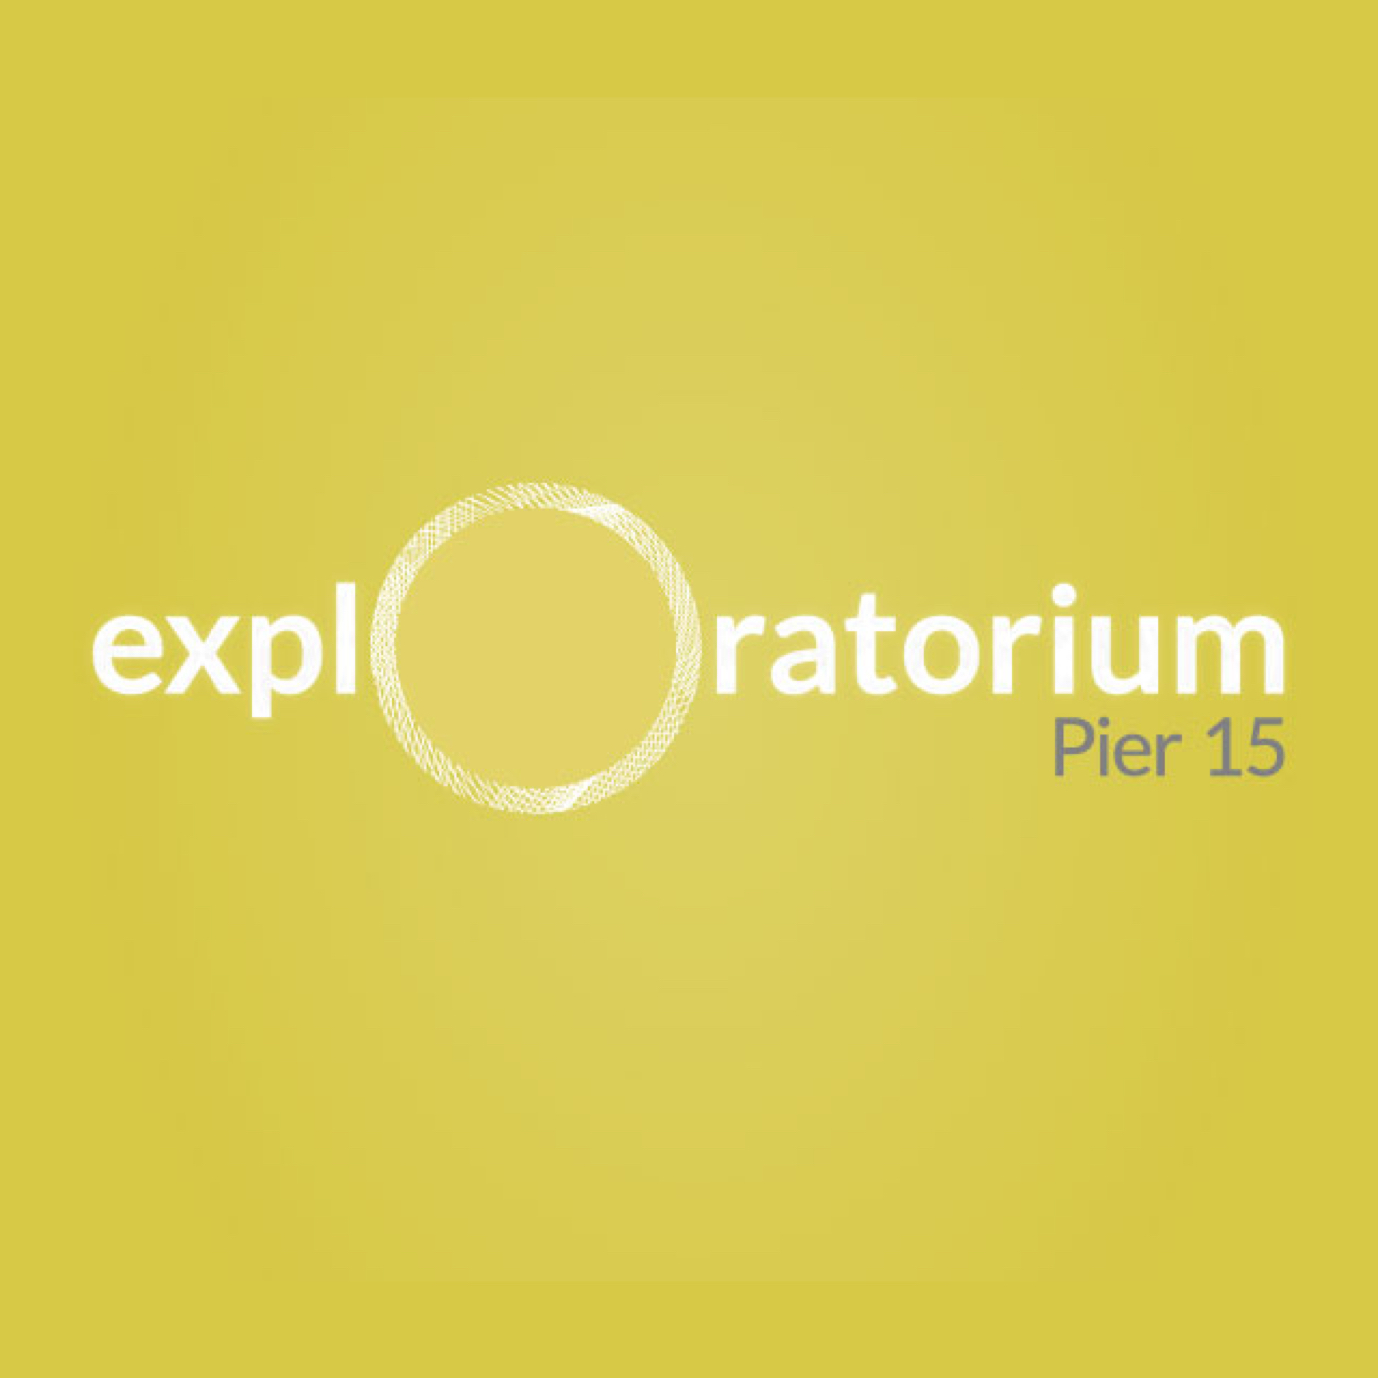 Exploratorium Pier 15 logo